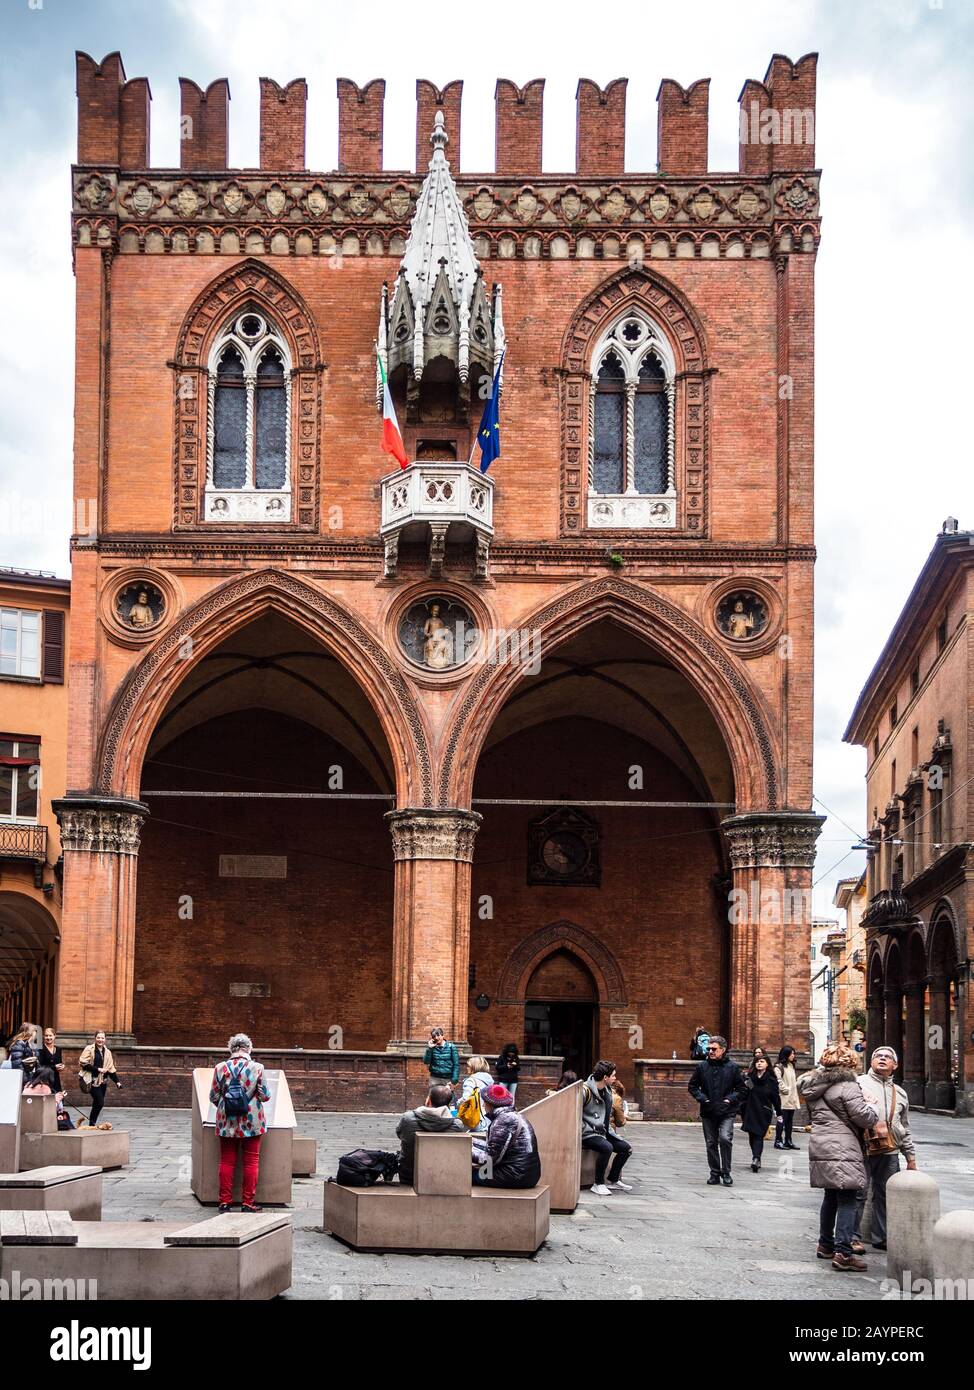 Palazzo della Mercanzia Bologna. Sitz der Industrie- und Handelskammer, der Landwirtschaft und des Gewerbes. Abgeschlossen 1391. Aka Loggia dei Mercanti. Stockfoto